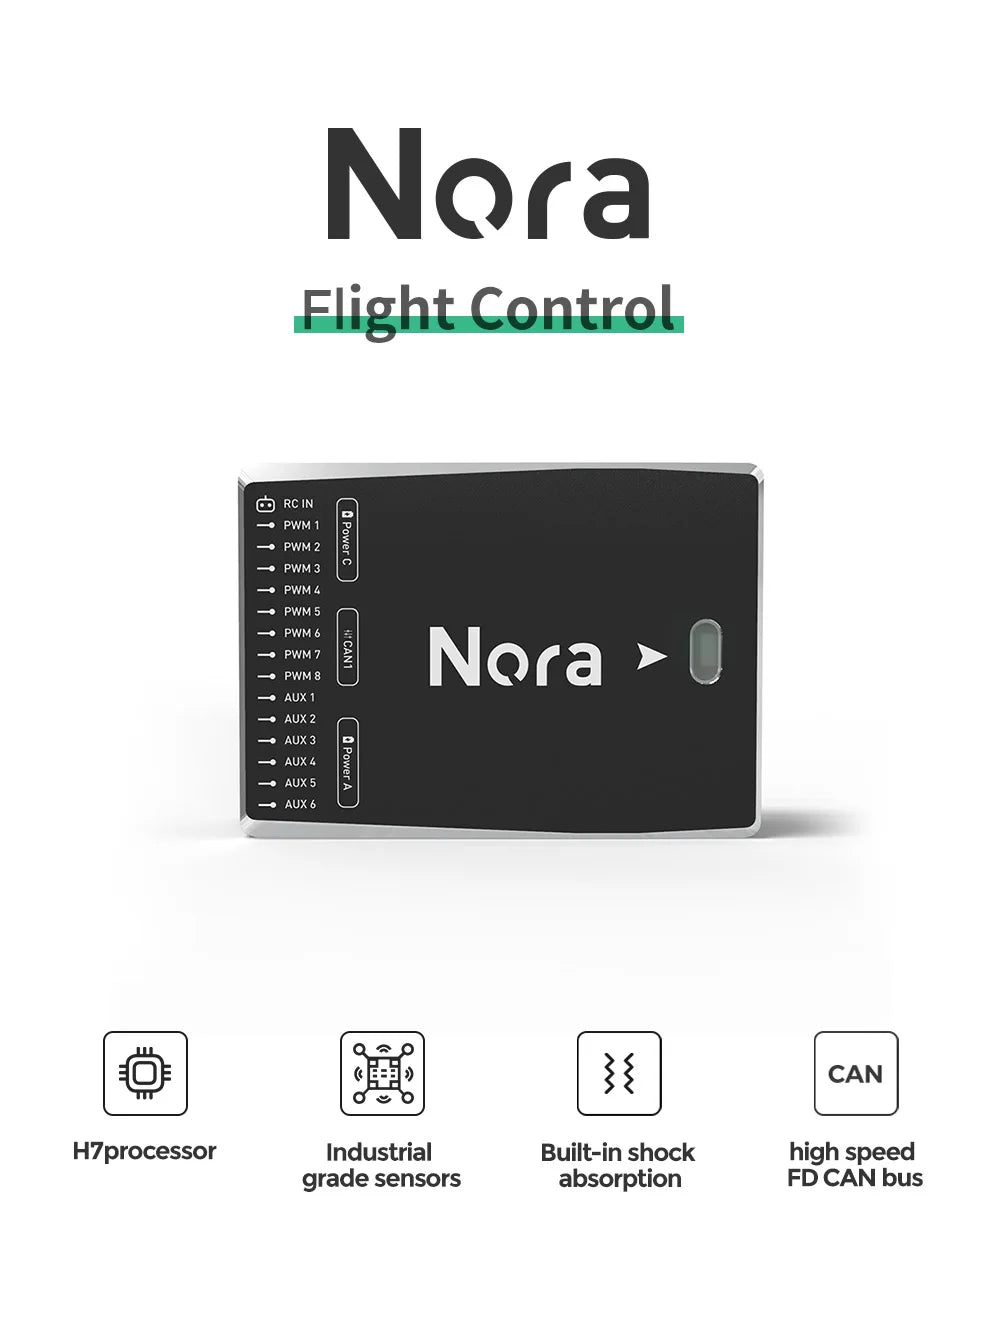 CUAV Nora Flight Controller SPECIFICATIONS Wheelbase : Screws